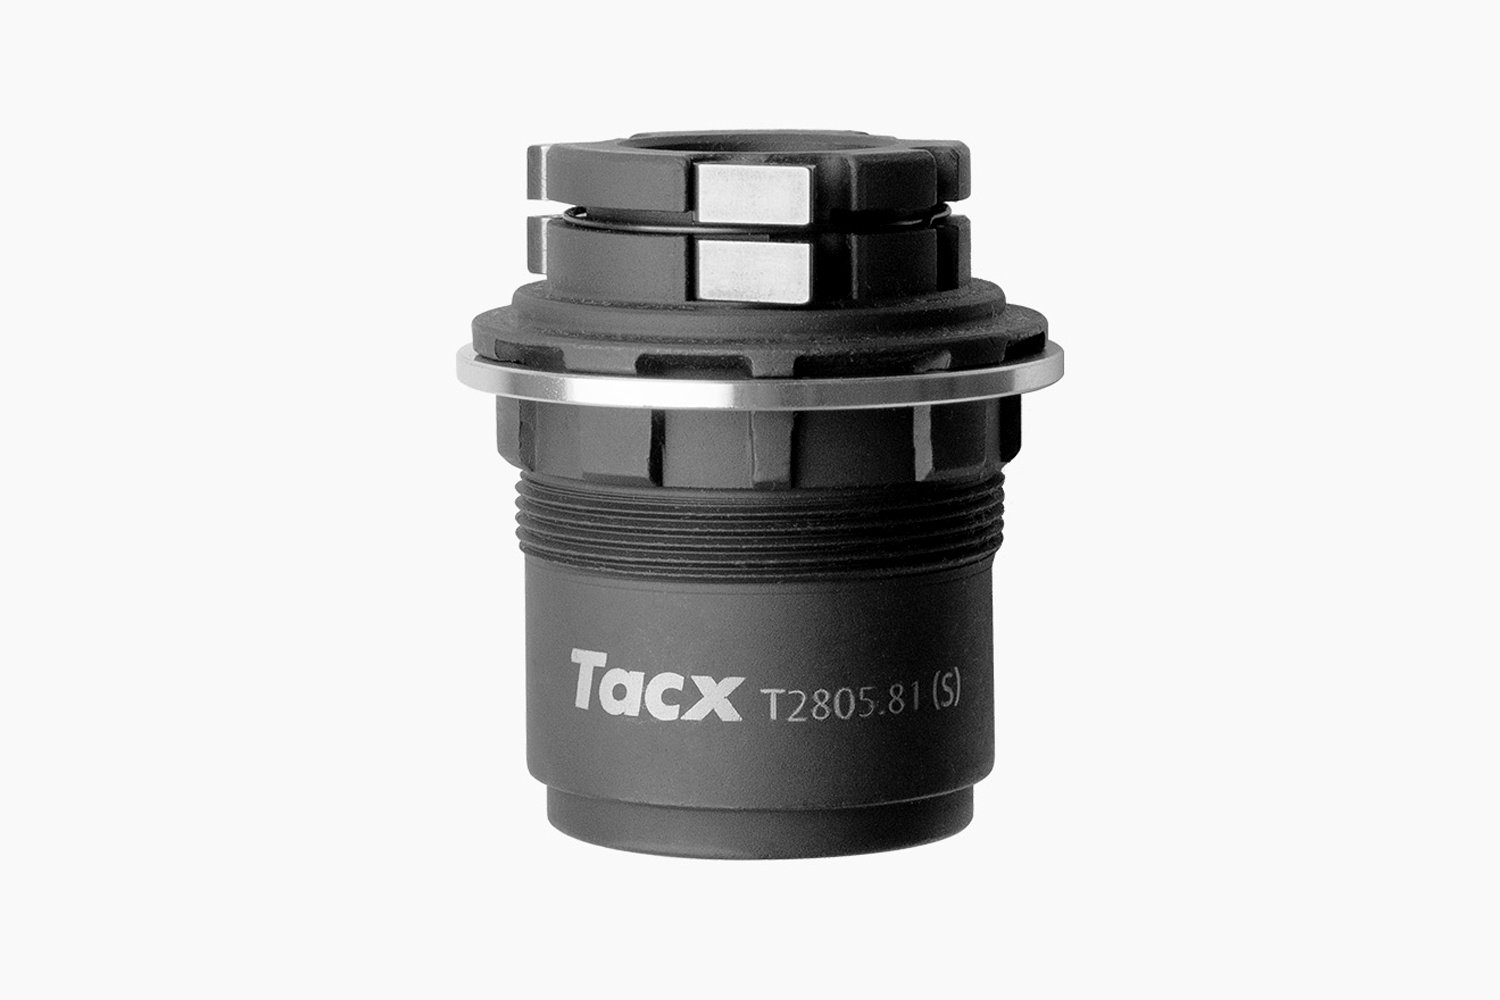 Барабан Tacx для кассеты SRAM XD-R, для Tacx, T2805.81 барабан вело mavic hg 11 для кассеты 30871101